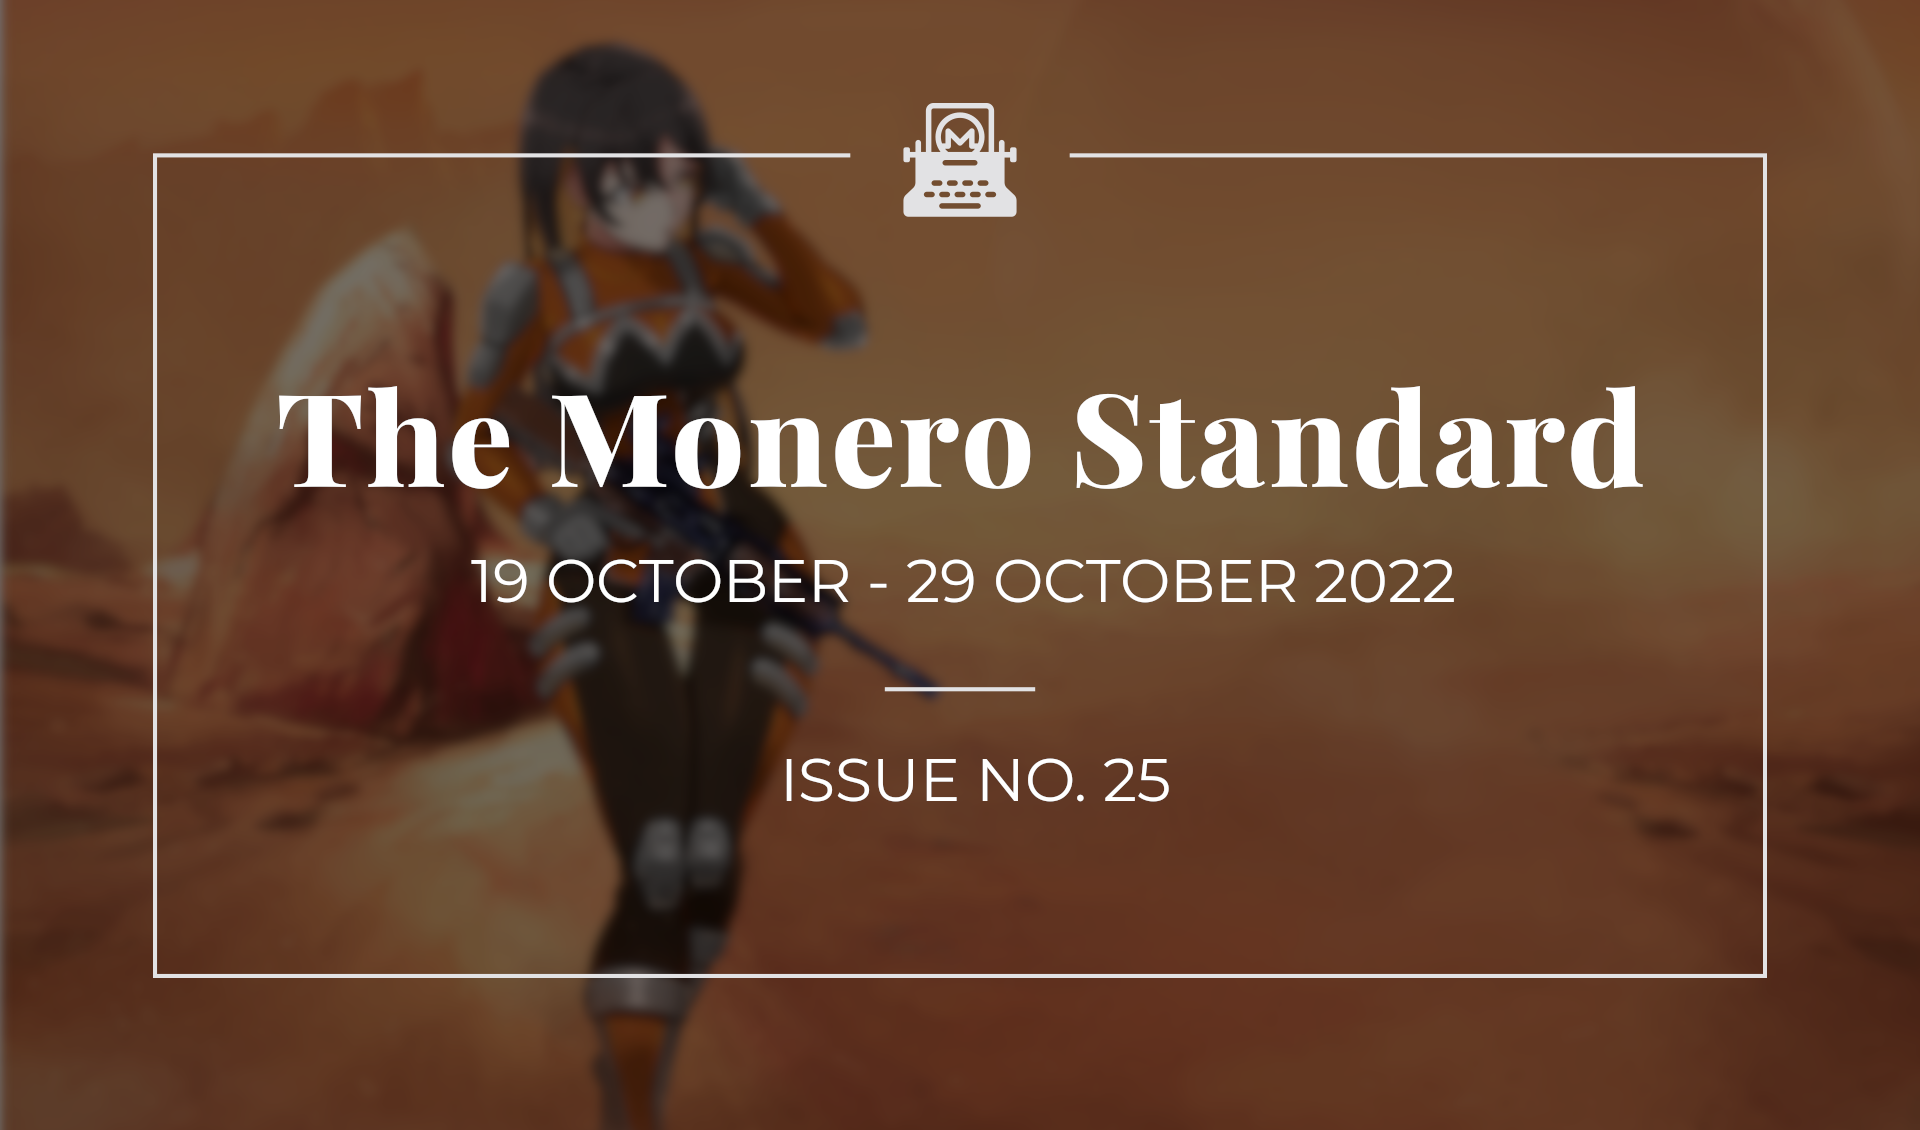 The Monero Standard #25: 19 October 2022 - 29 October 2022